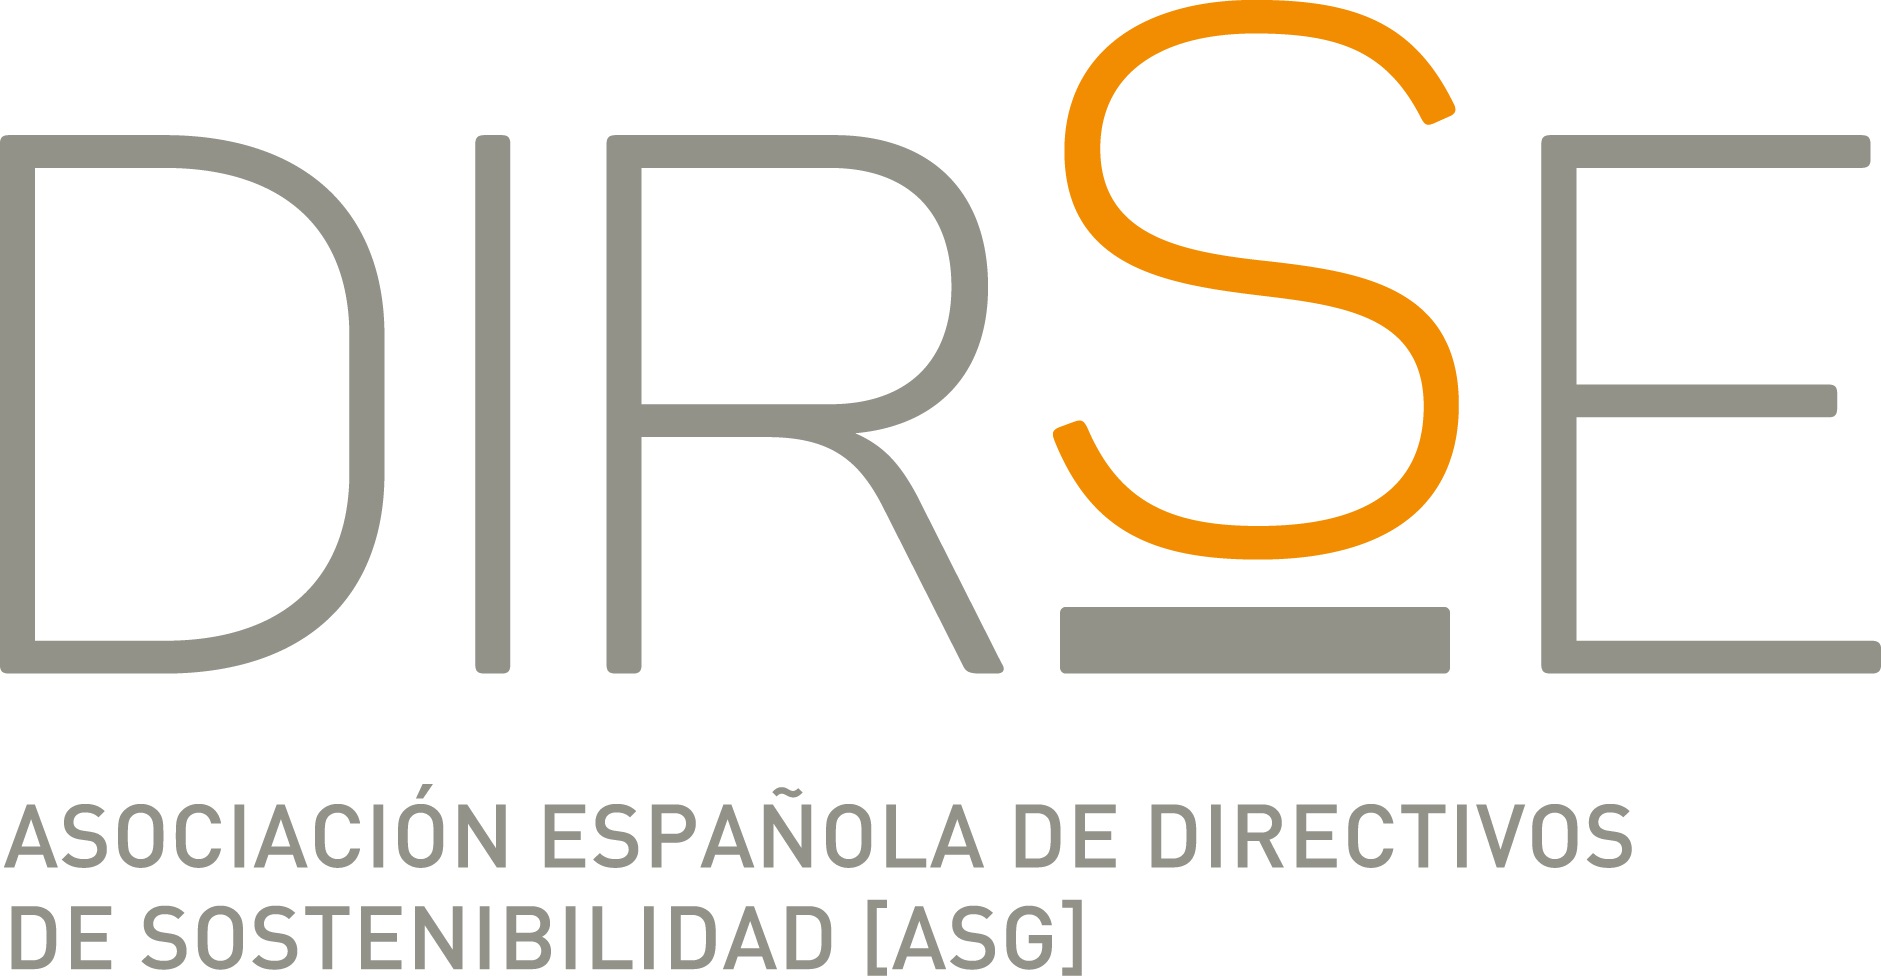 Asociación Española de Directivos de Responsabilidad Social - DIRSE